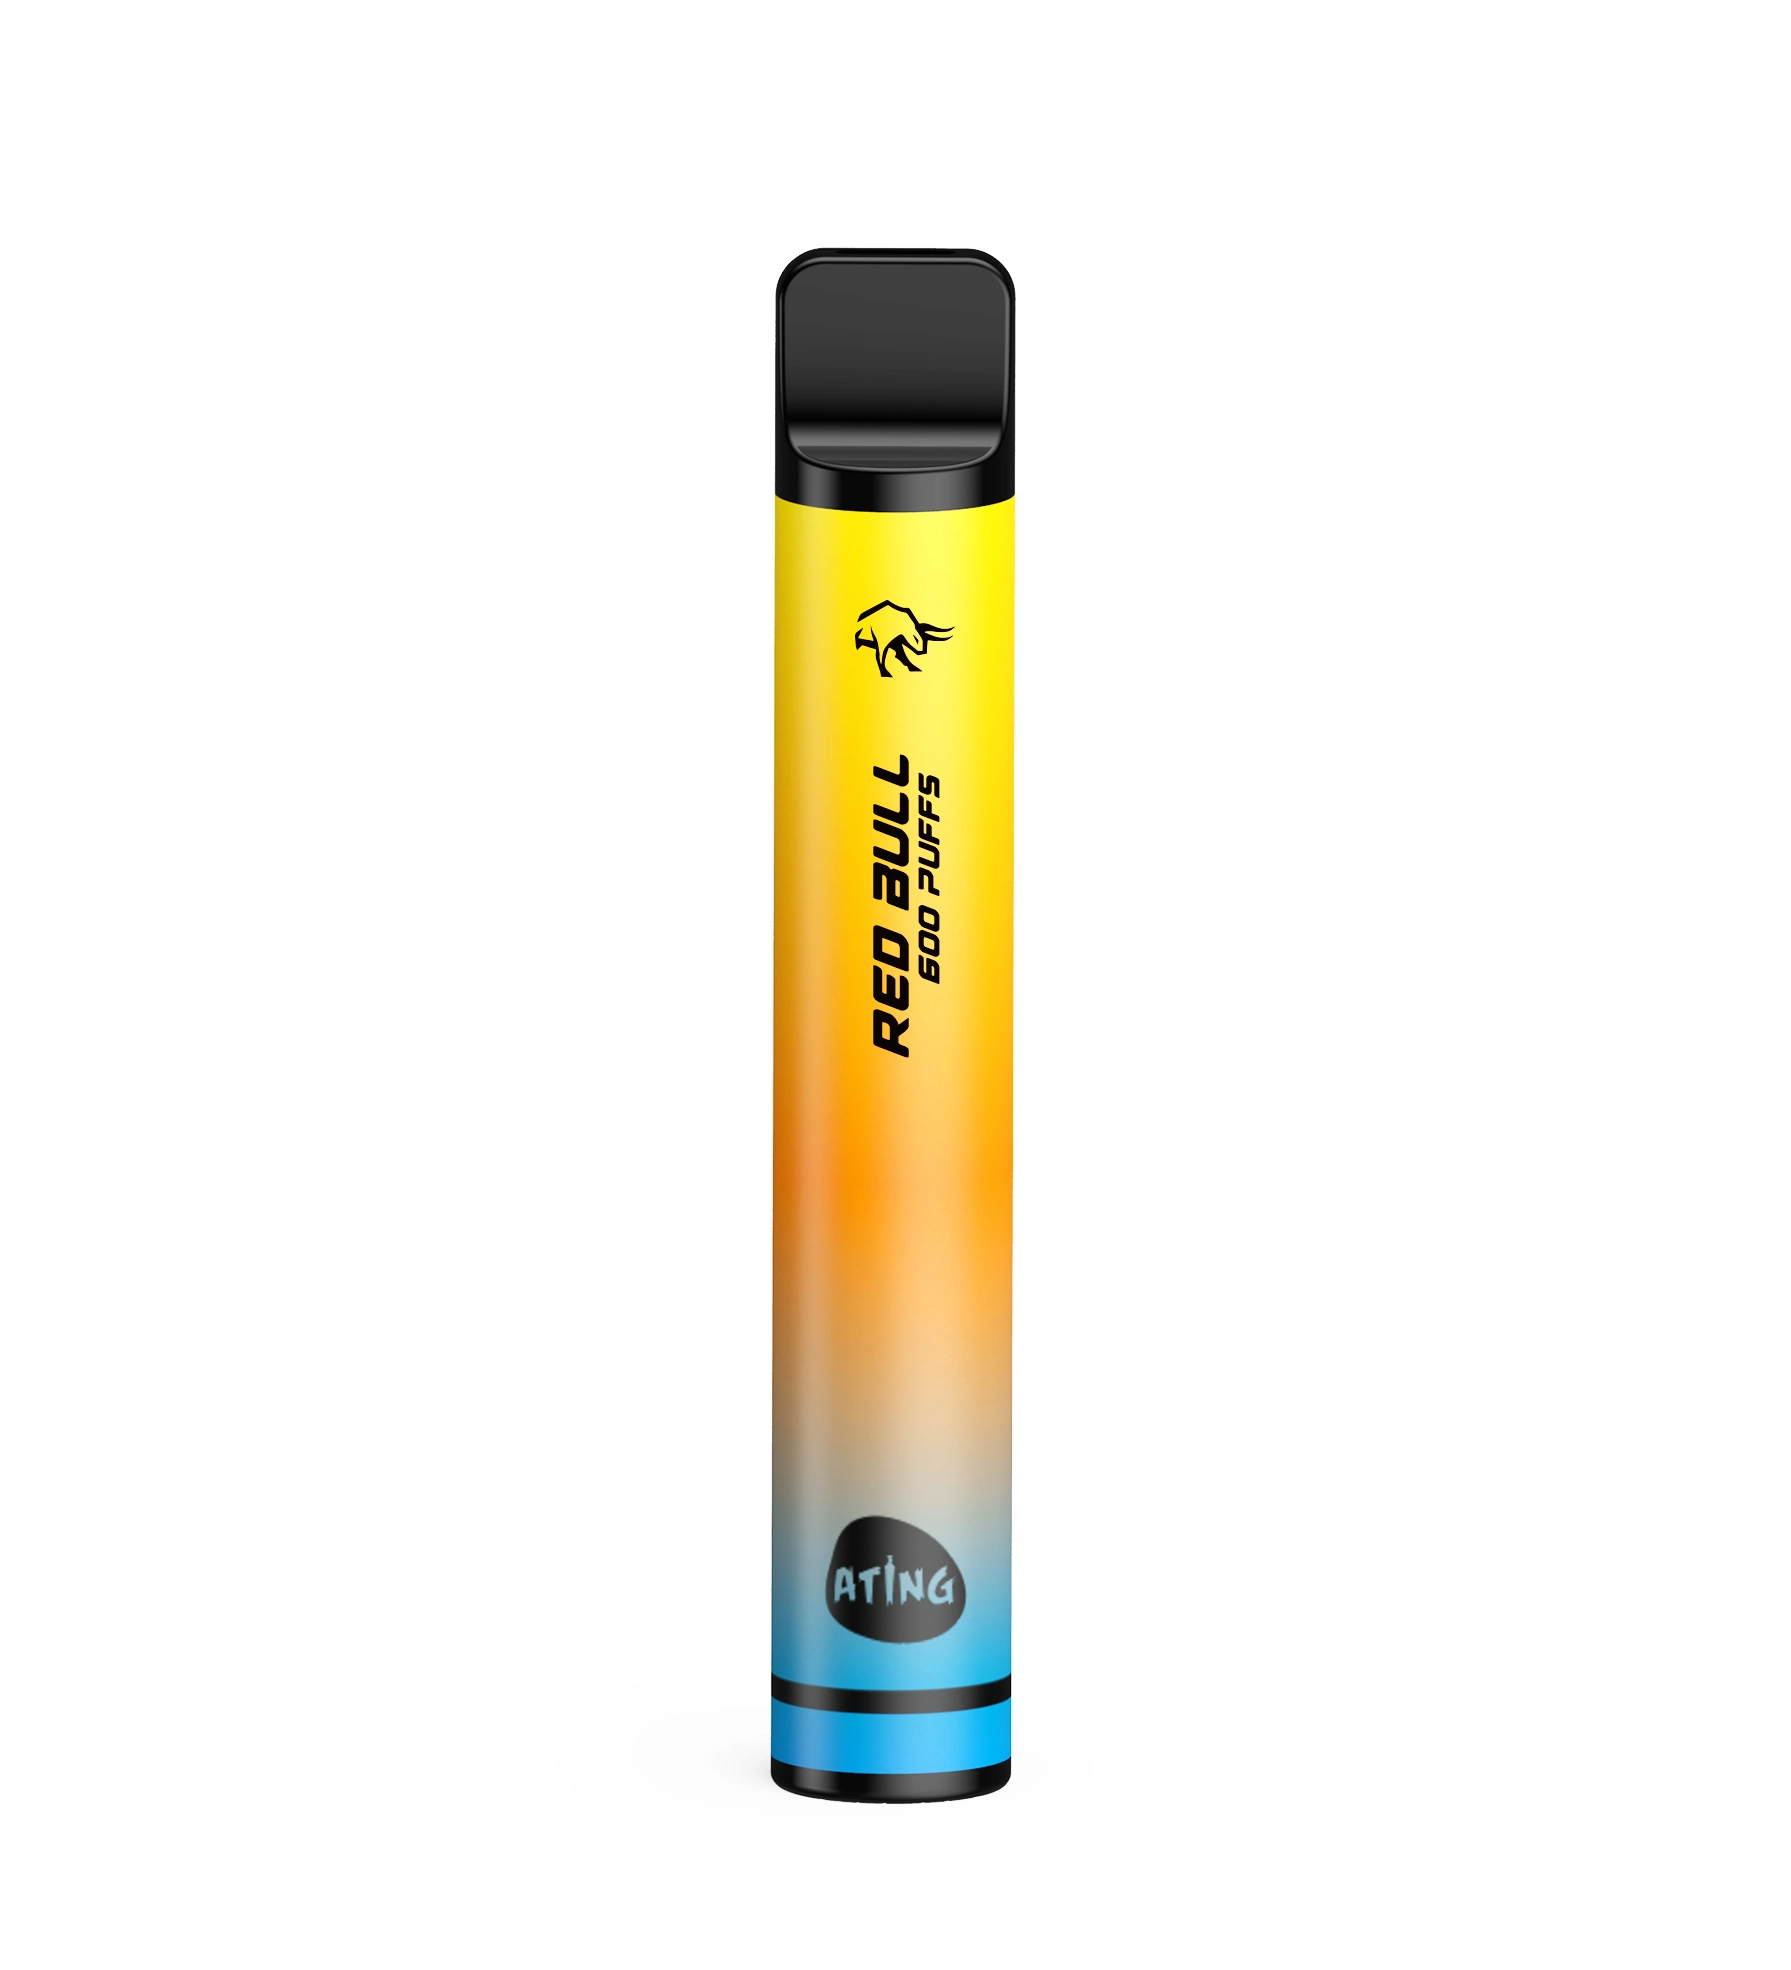 Disposable-Vape-Pen-600-Puffs-Wholesale-E-Cigarette-Germany-Tpd-Vape-Elux-Style-Disposable-Vape (2)